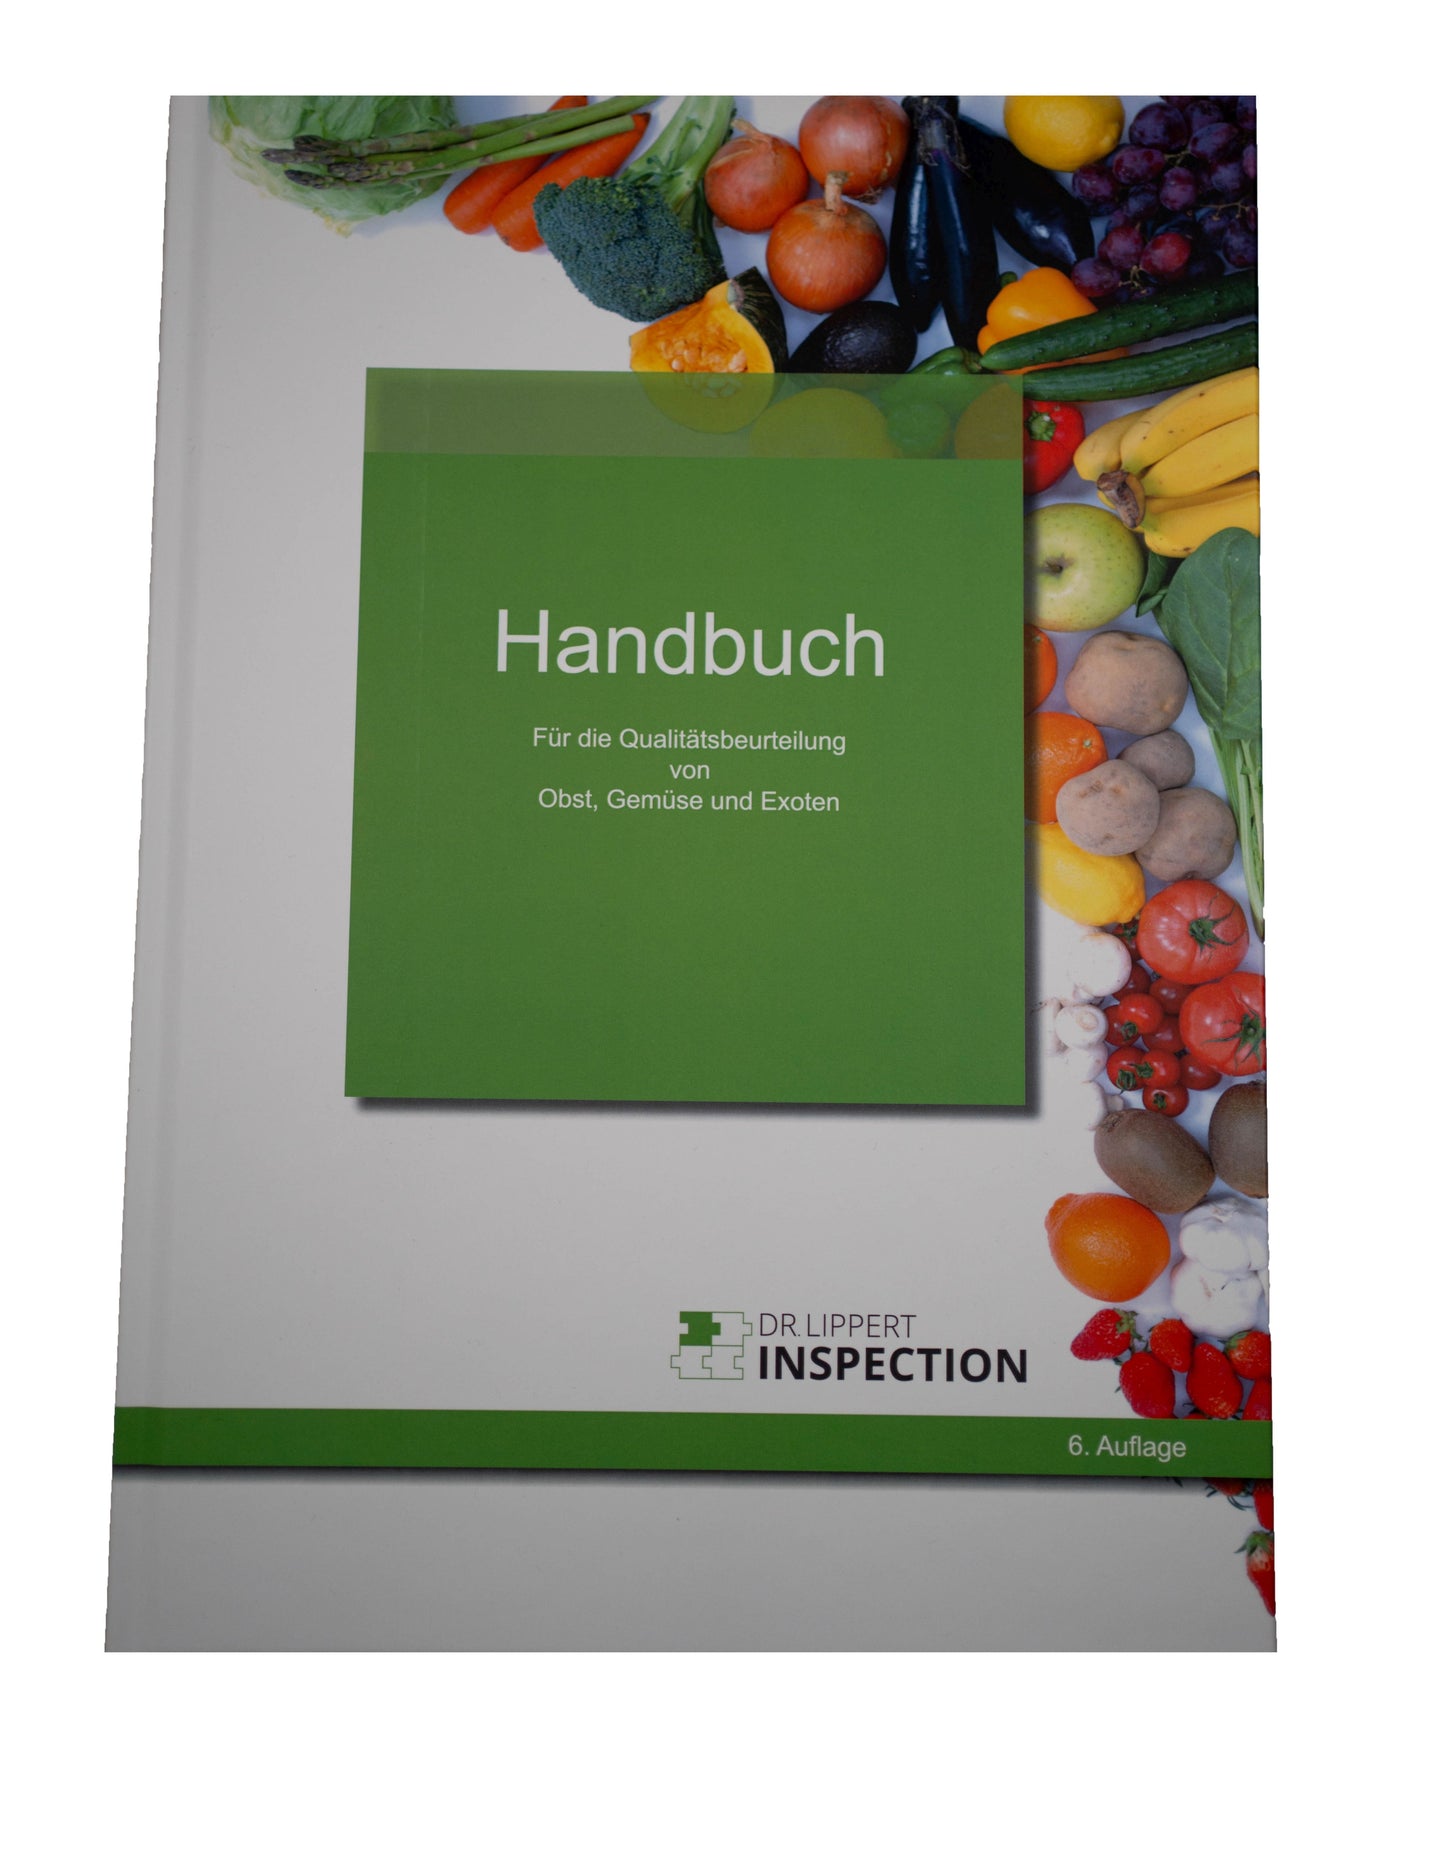 Handbuch zur Qualitätsbeurteilung von Obst und Gemüse - 6. Auflage